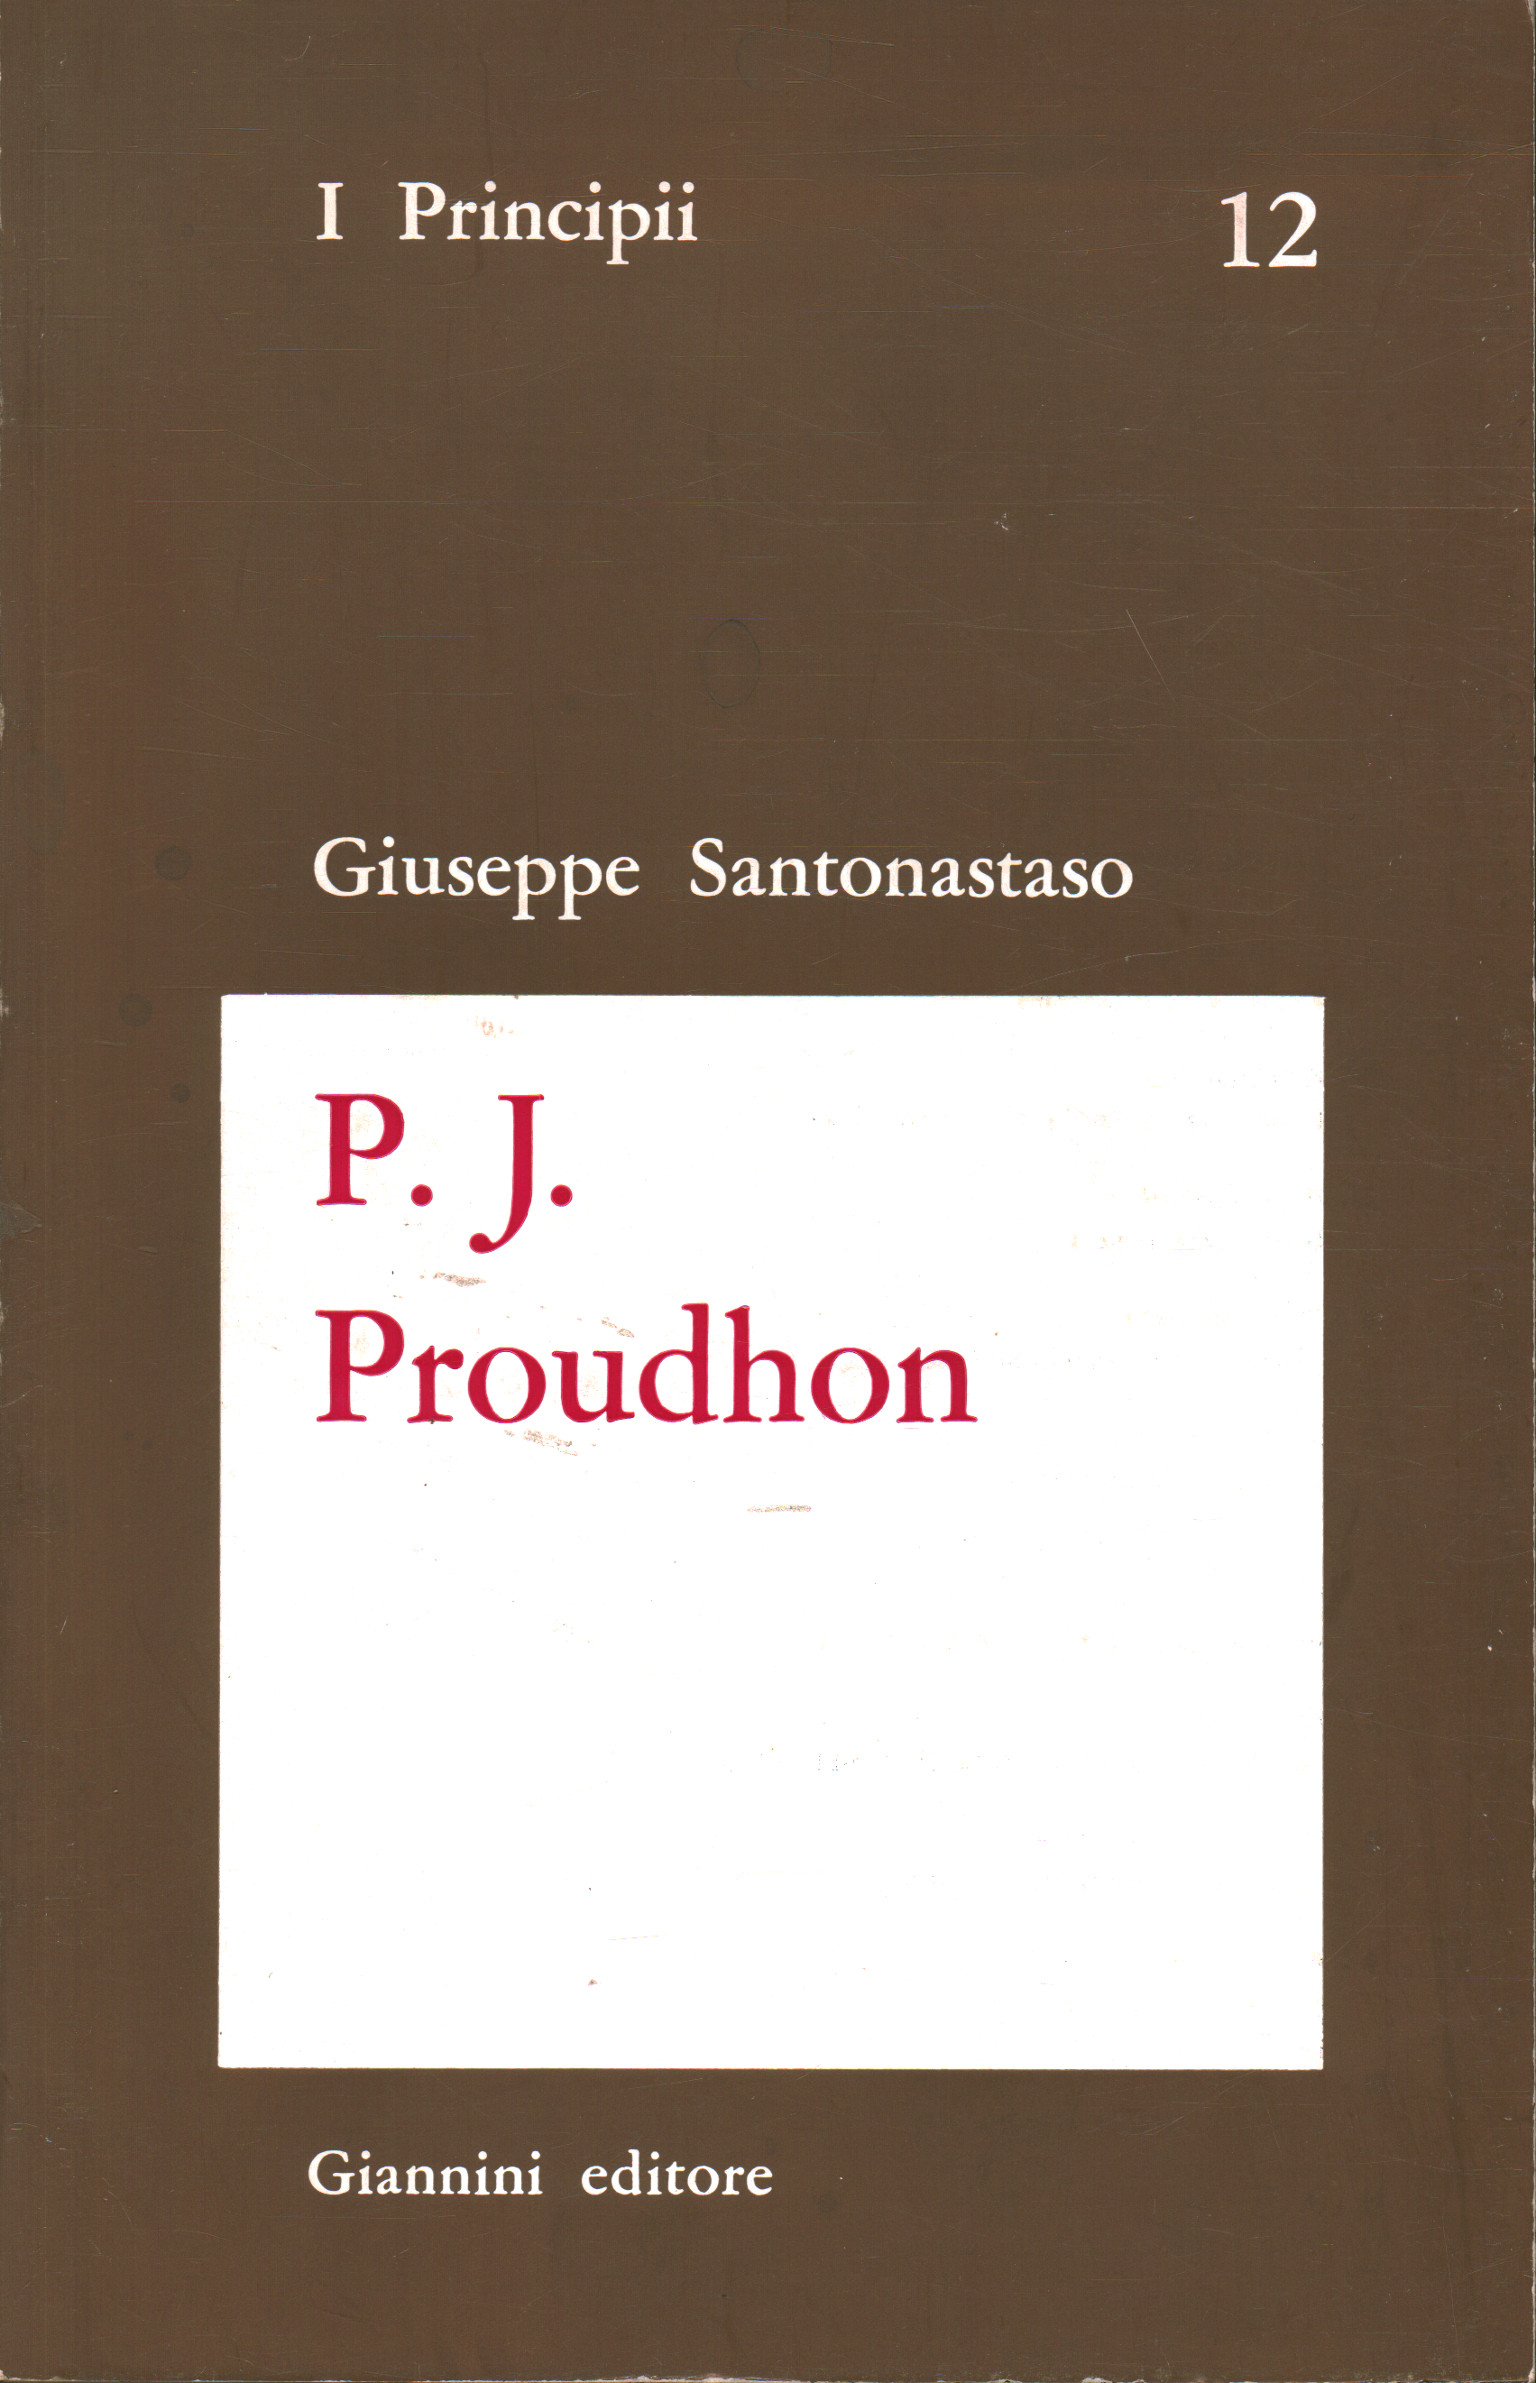 P.J. Proudhon, Giuseppe Santonastaso